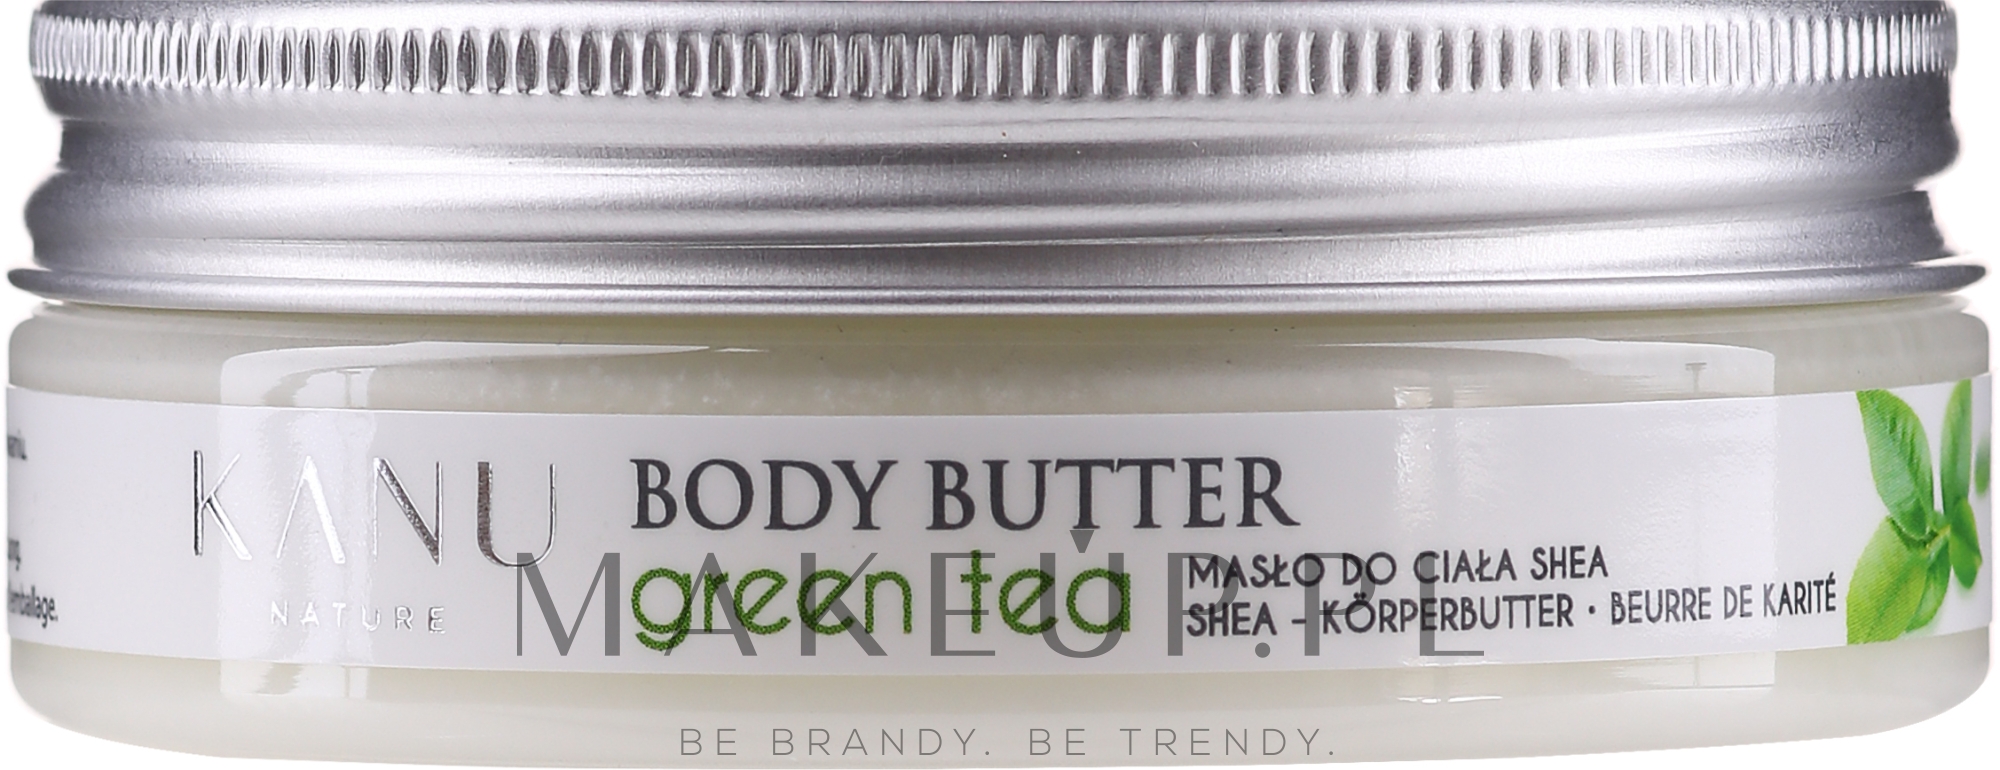 Masło do ciała Zielona herbata - Kanu Nature Green Tea Body Butter — Zdjęcie 50 g